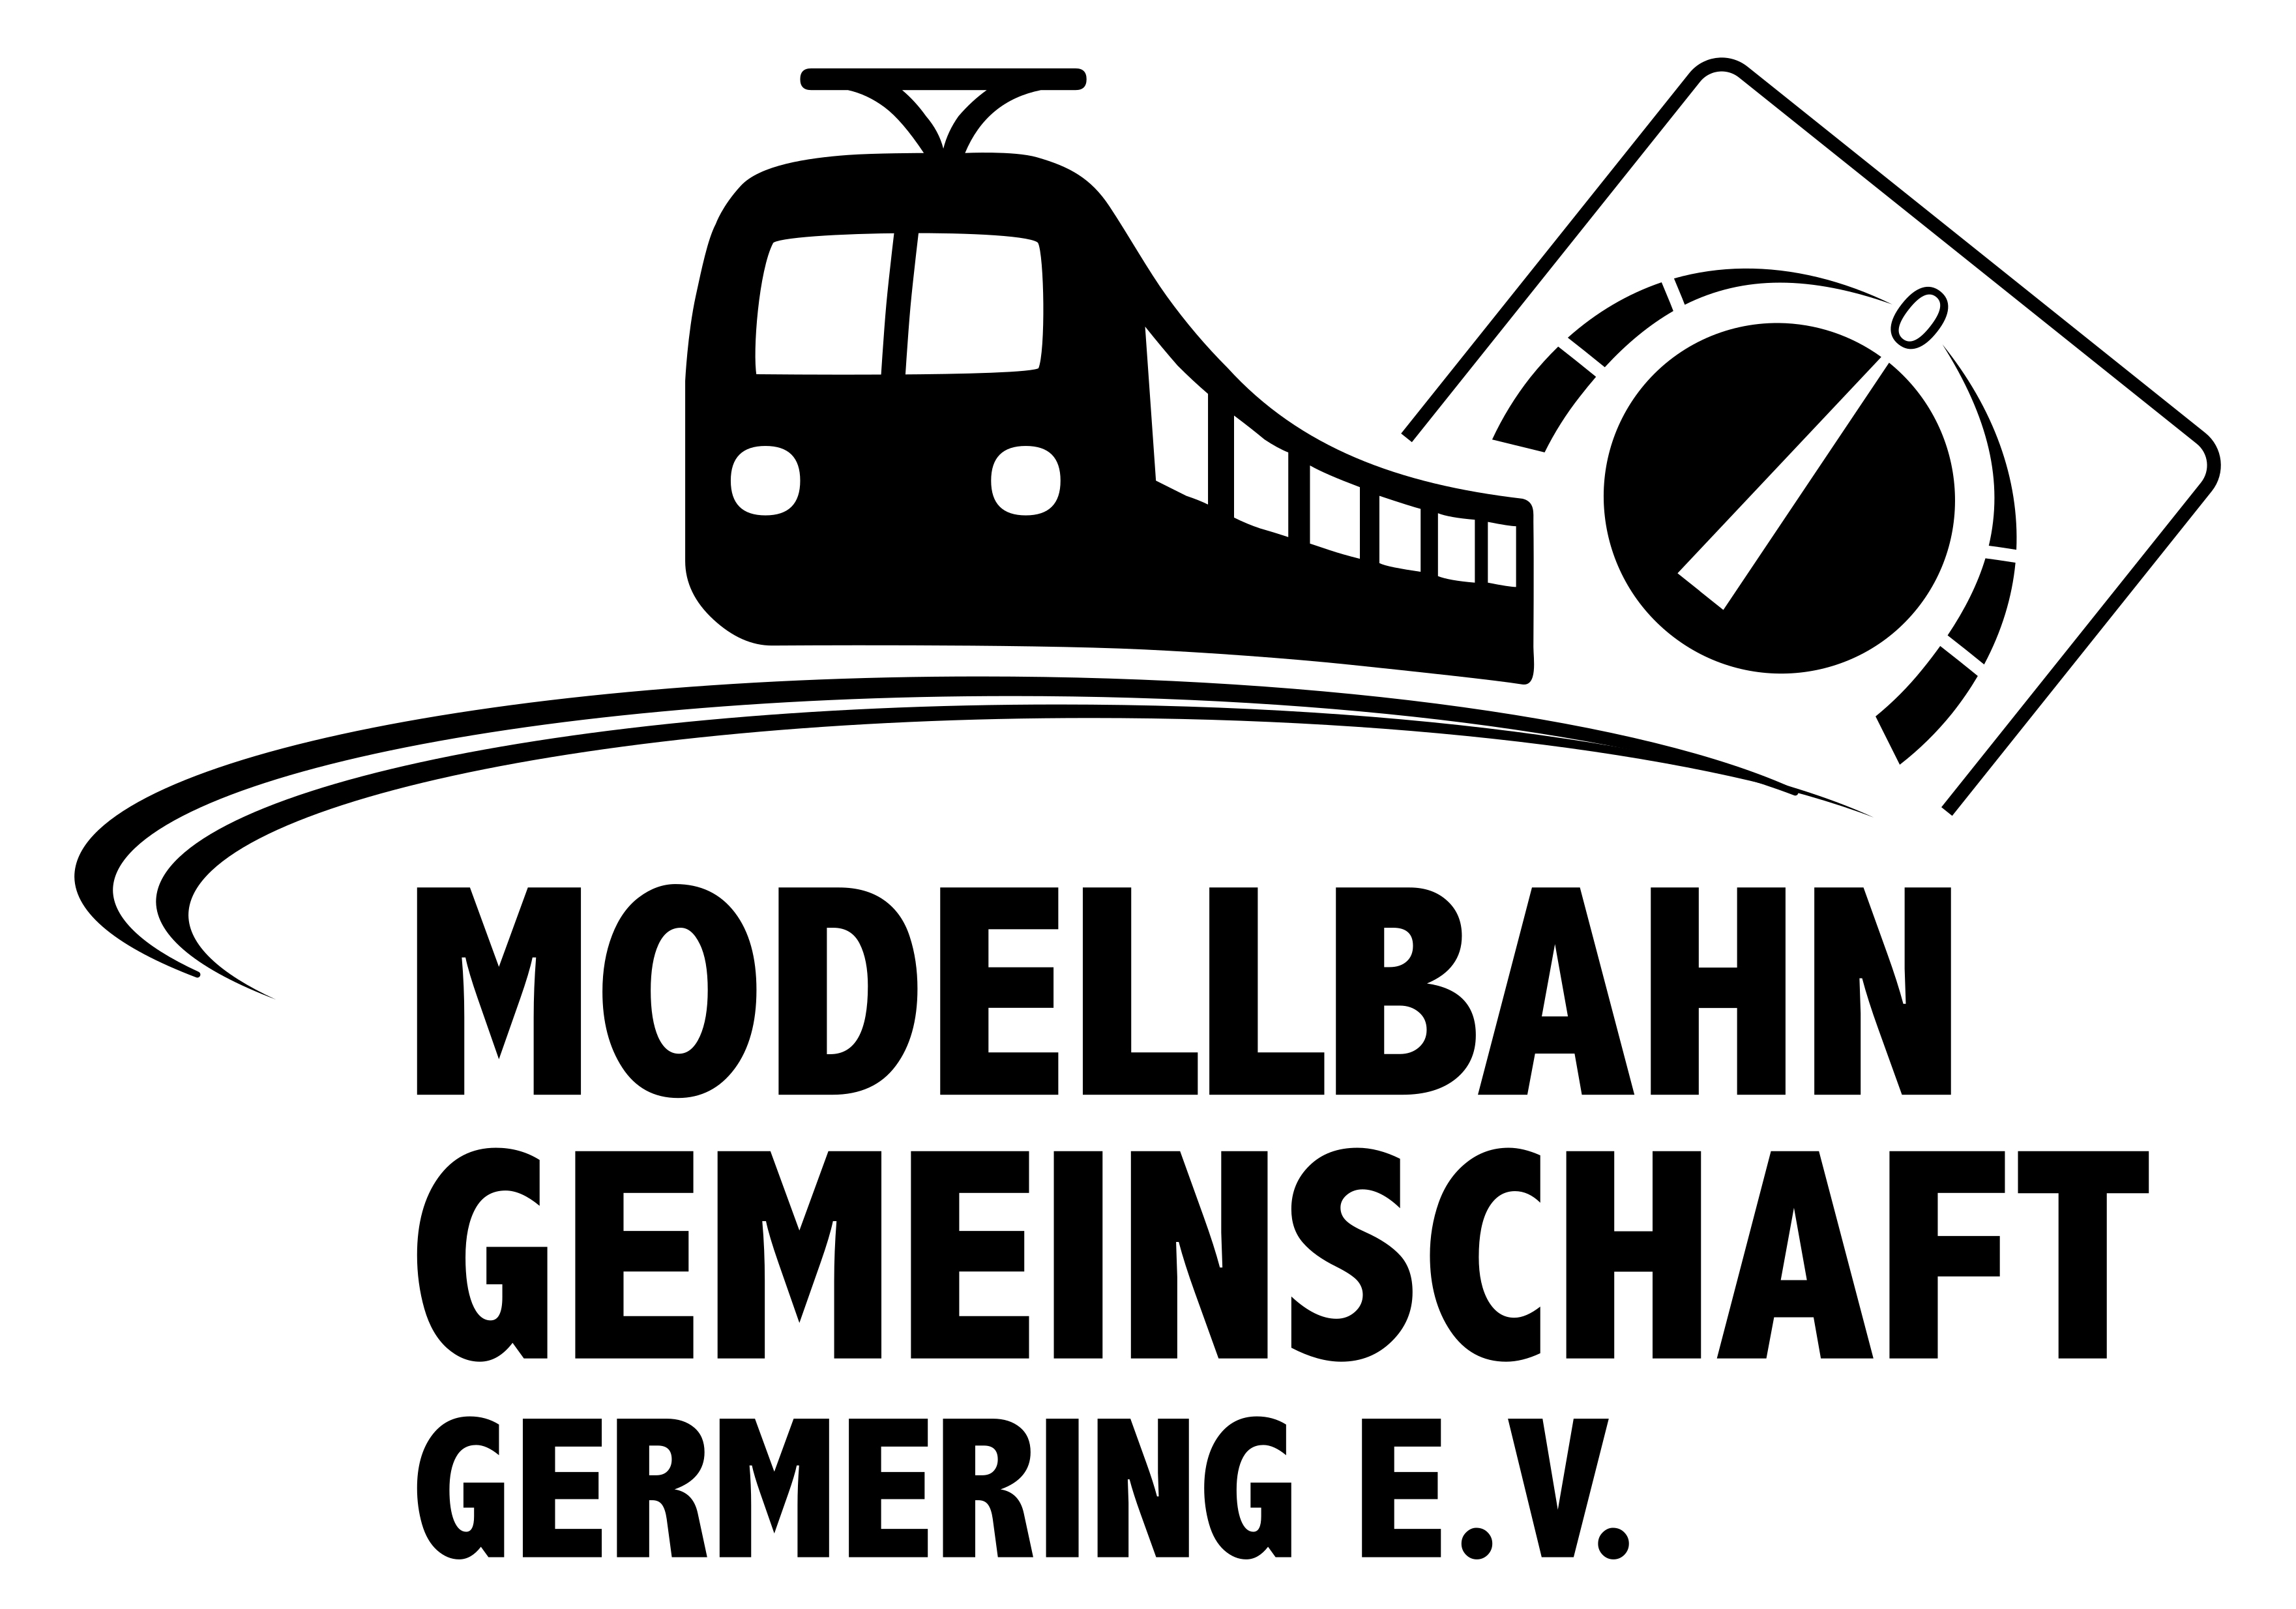 Modellbahn-Gemeinschaft Germering e.V.